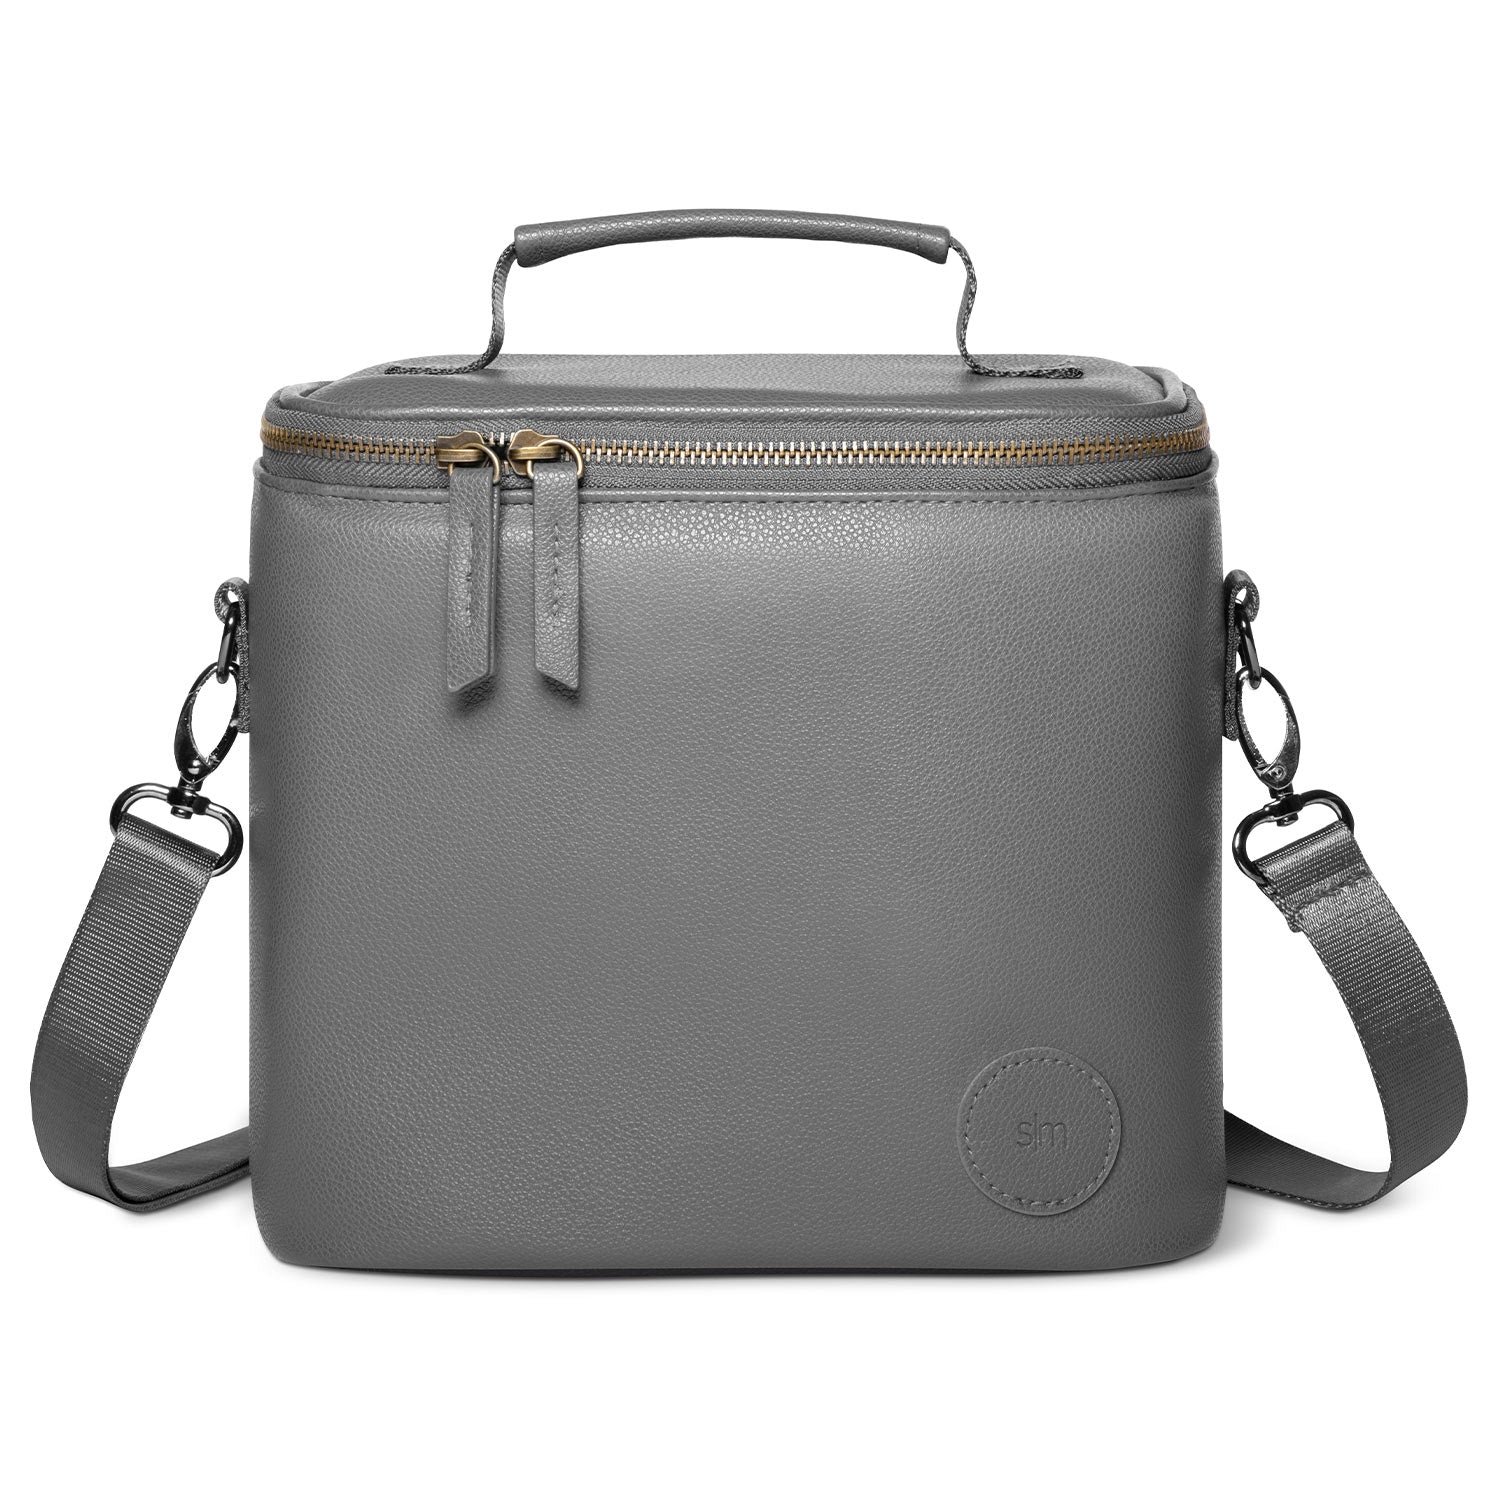 Simple Modern 4L Blakely Lunch Bag for Women & Men - Gray